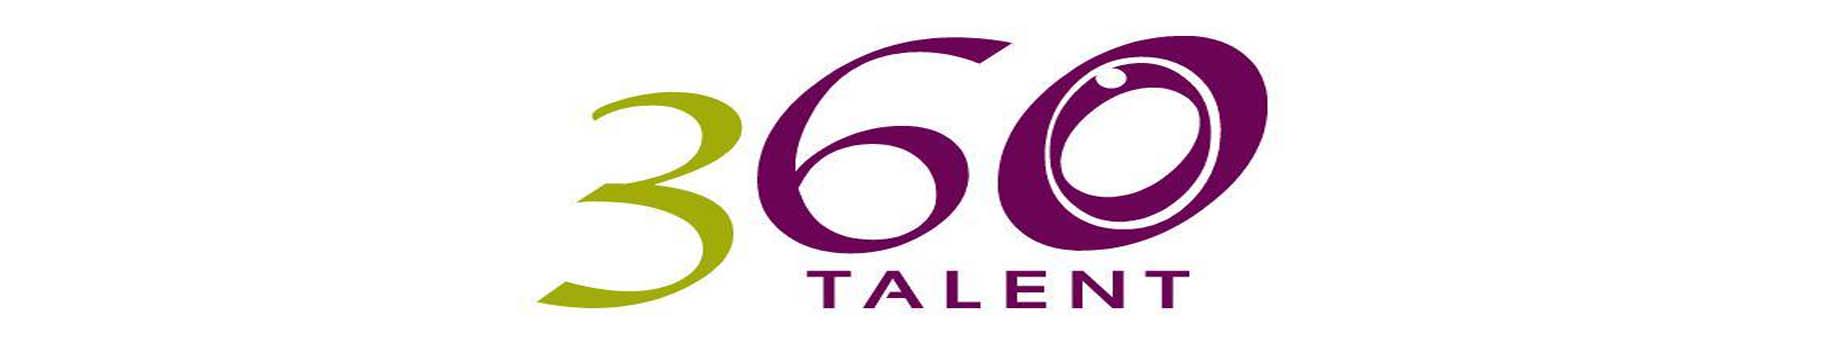 Seminario de Liderazgo de 360 Talent